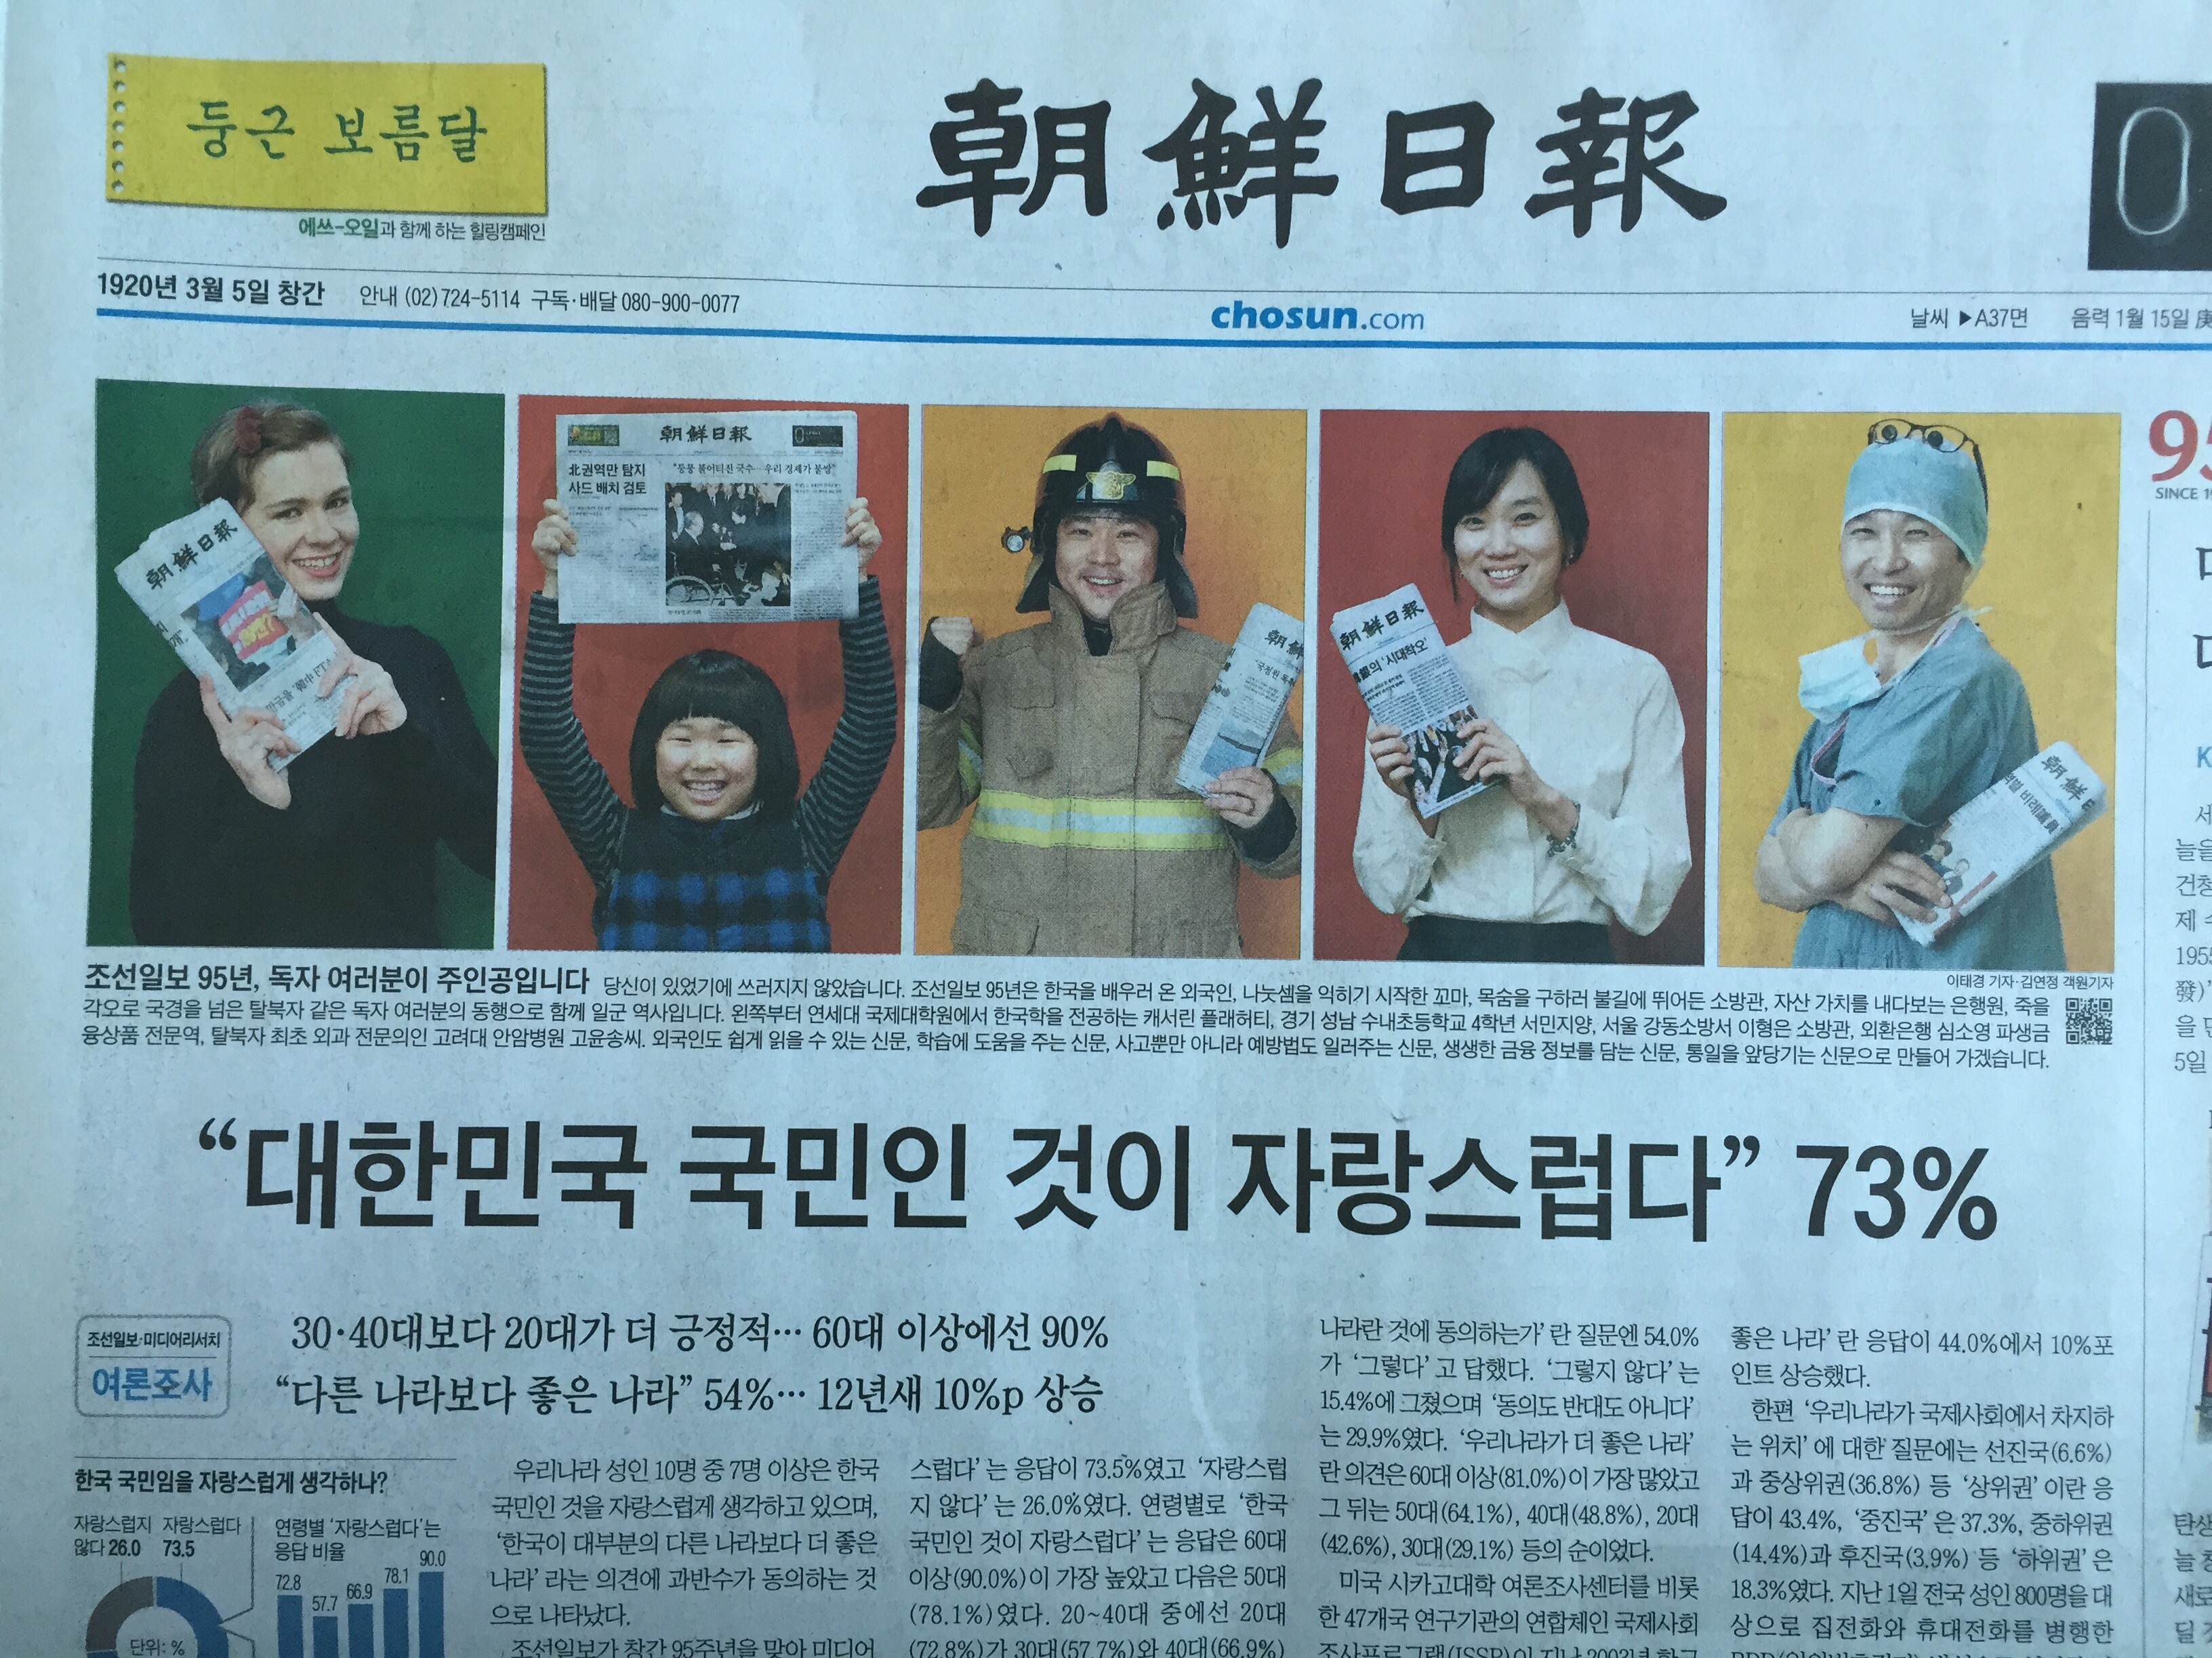 image.jpg : 오늘자 조선일보. 자랑스럽다!